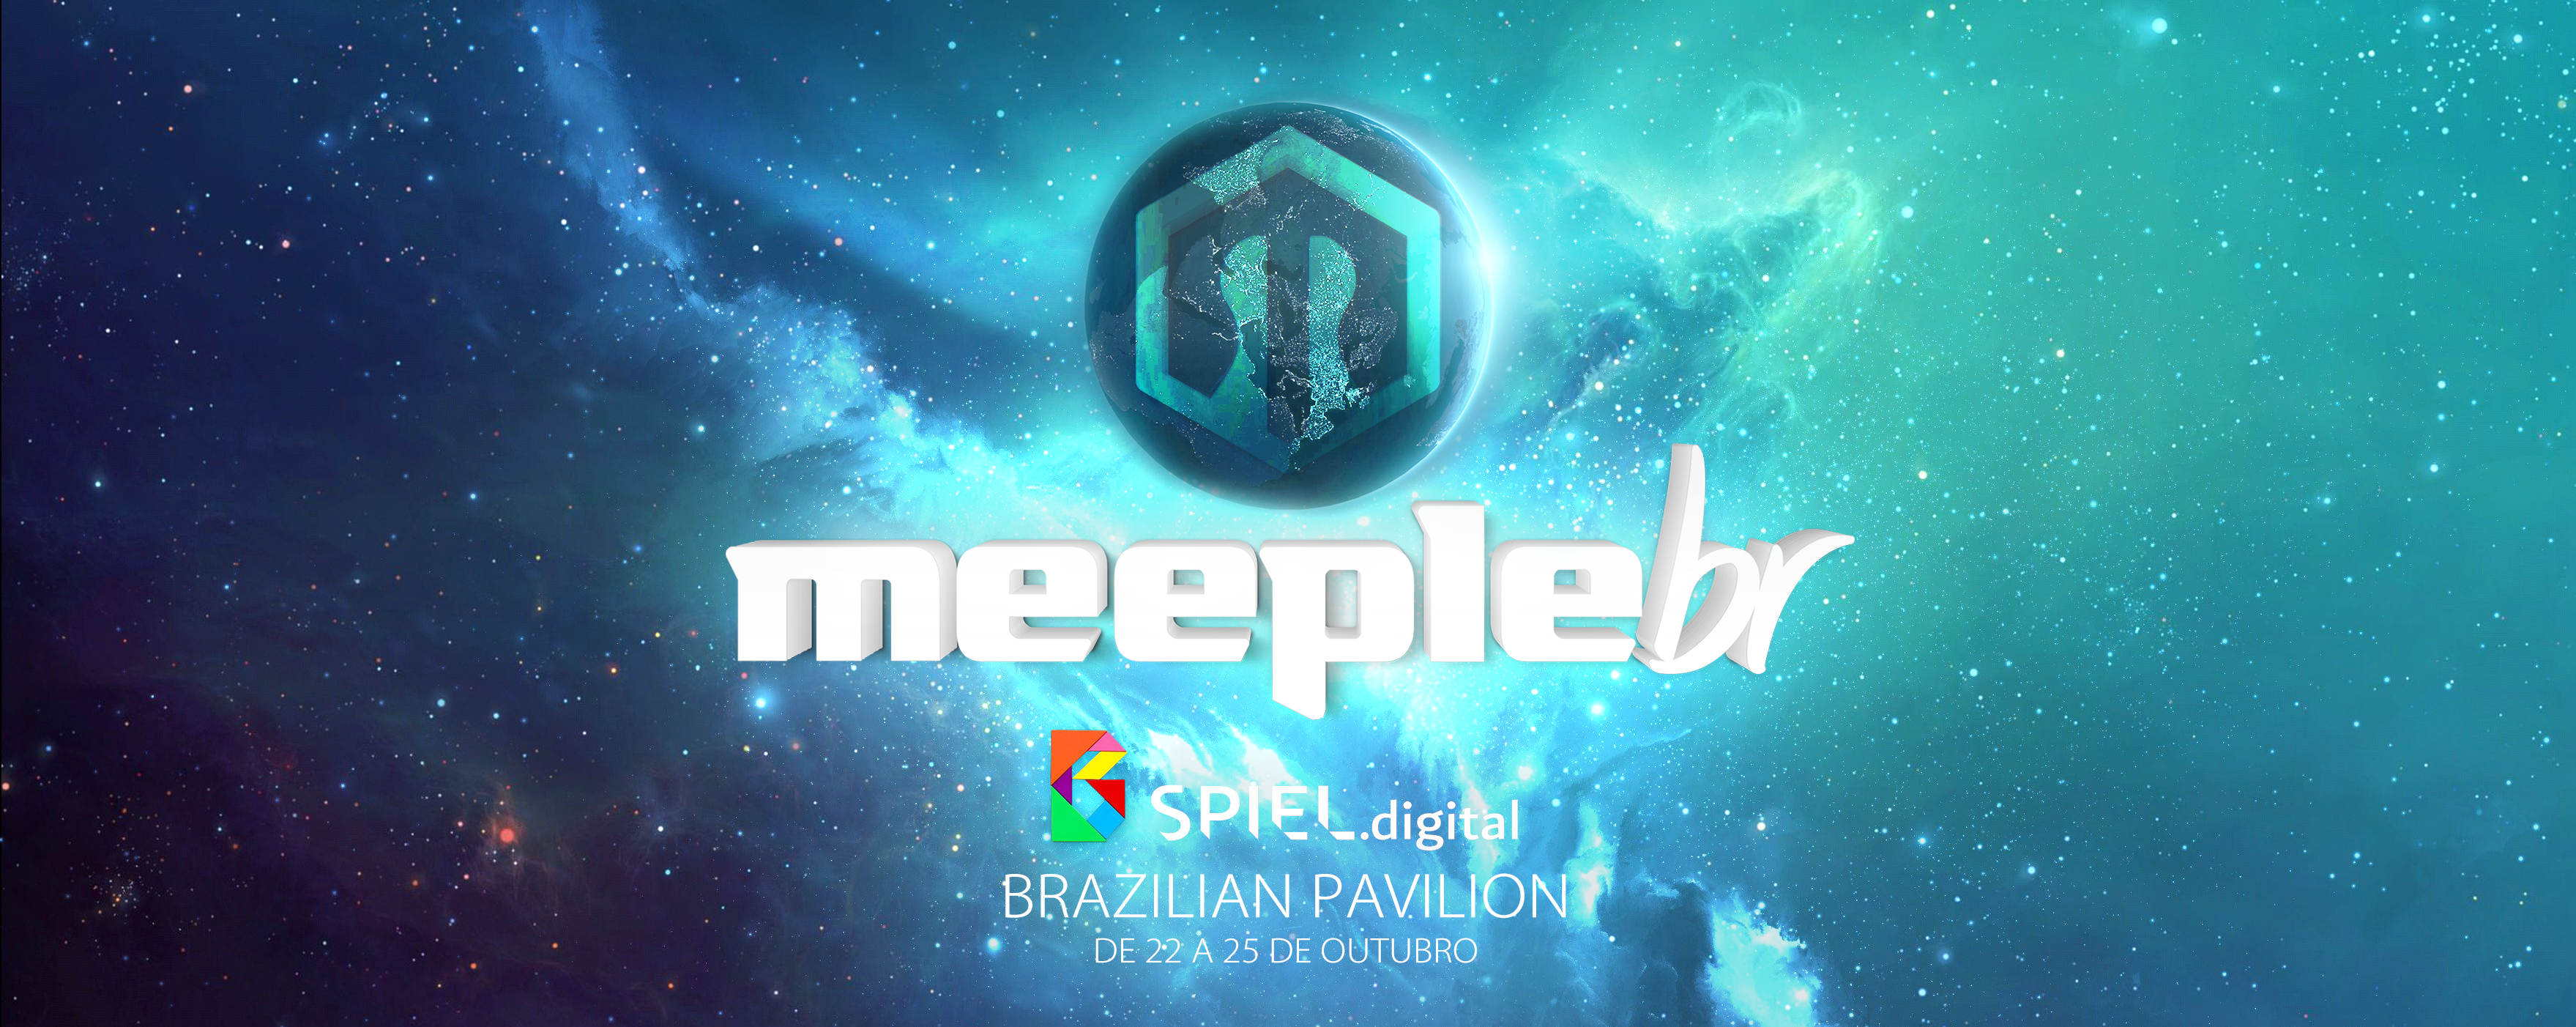 Anúncios e Atualizações Meeple BR - Spiel 2020 